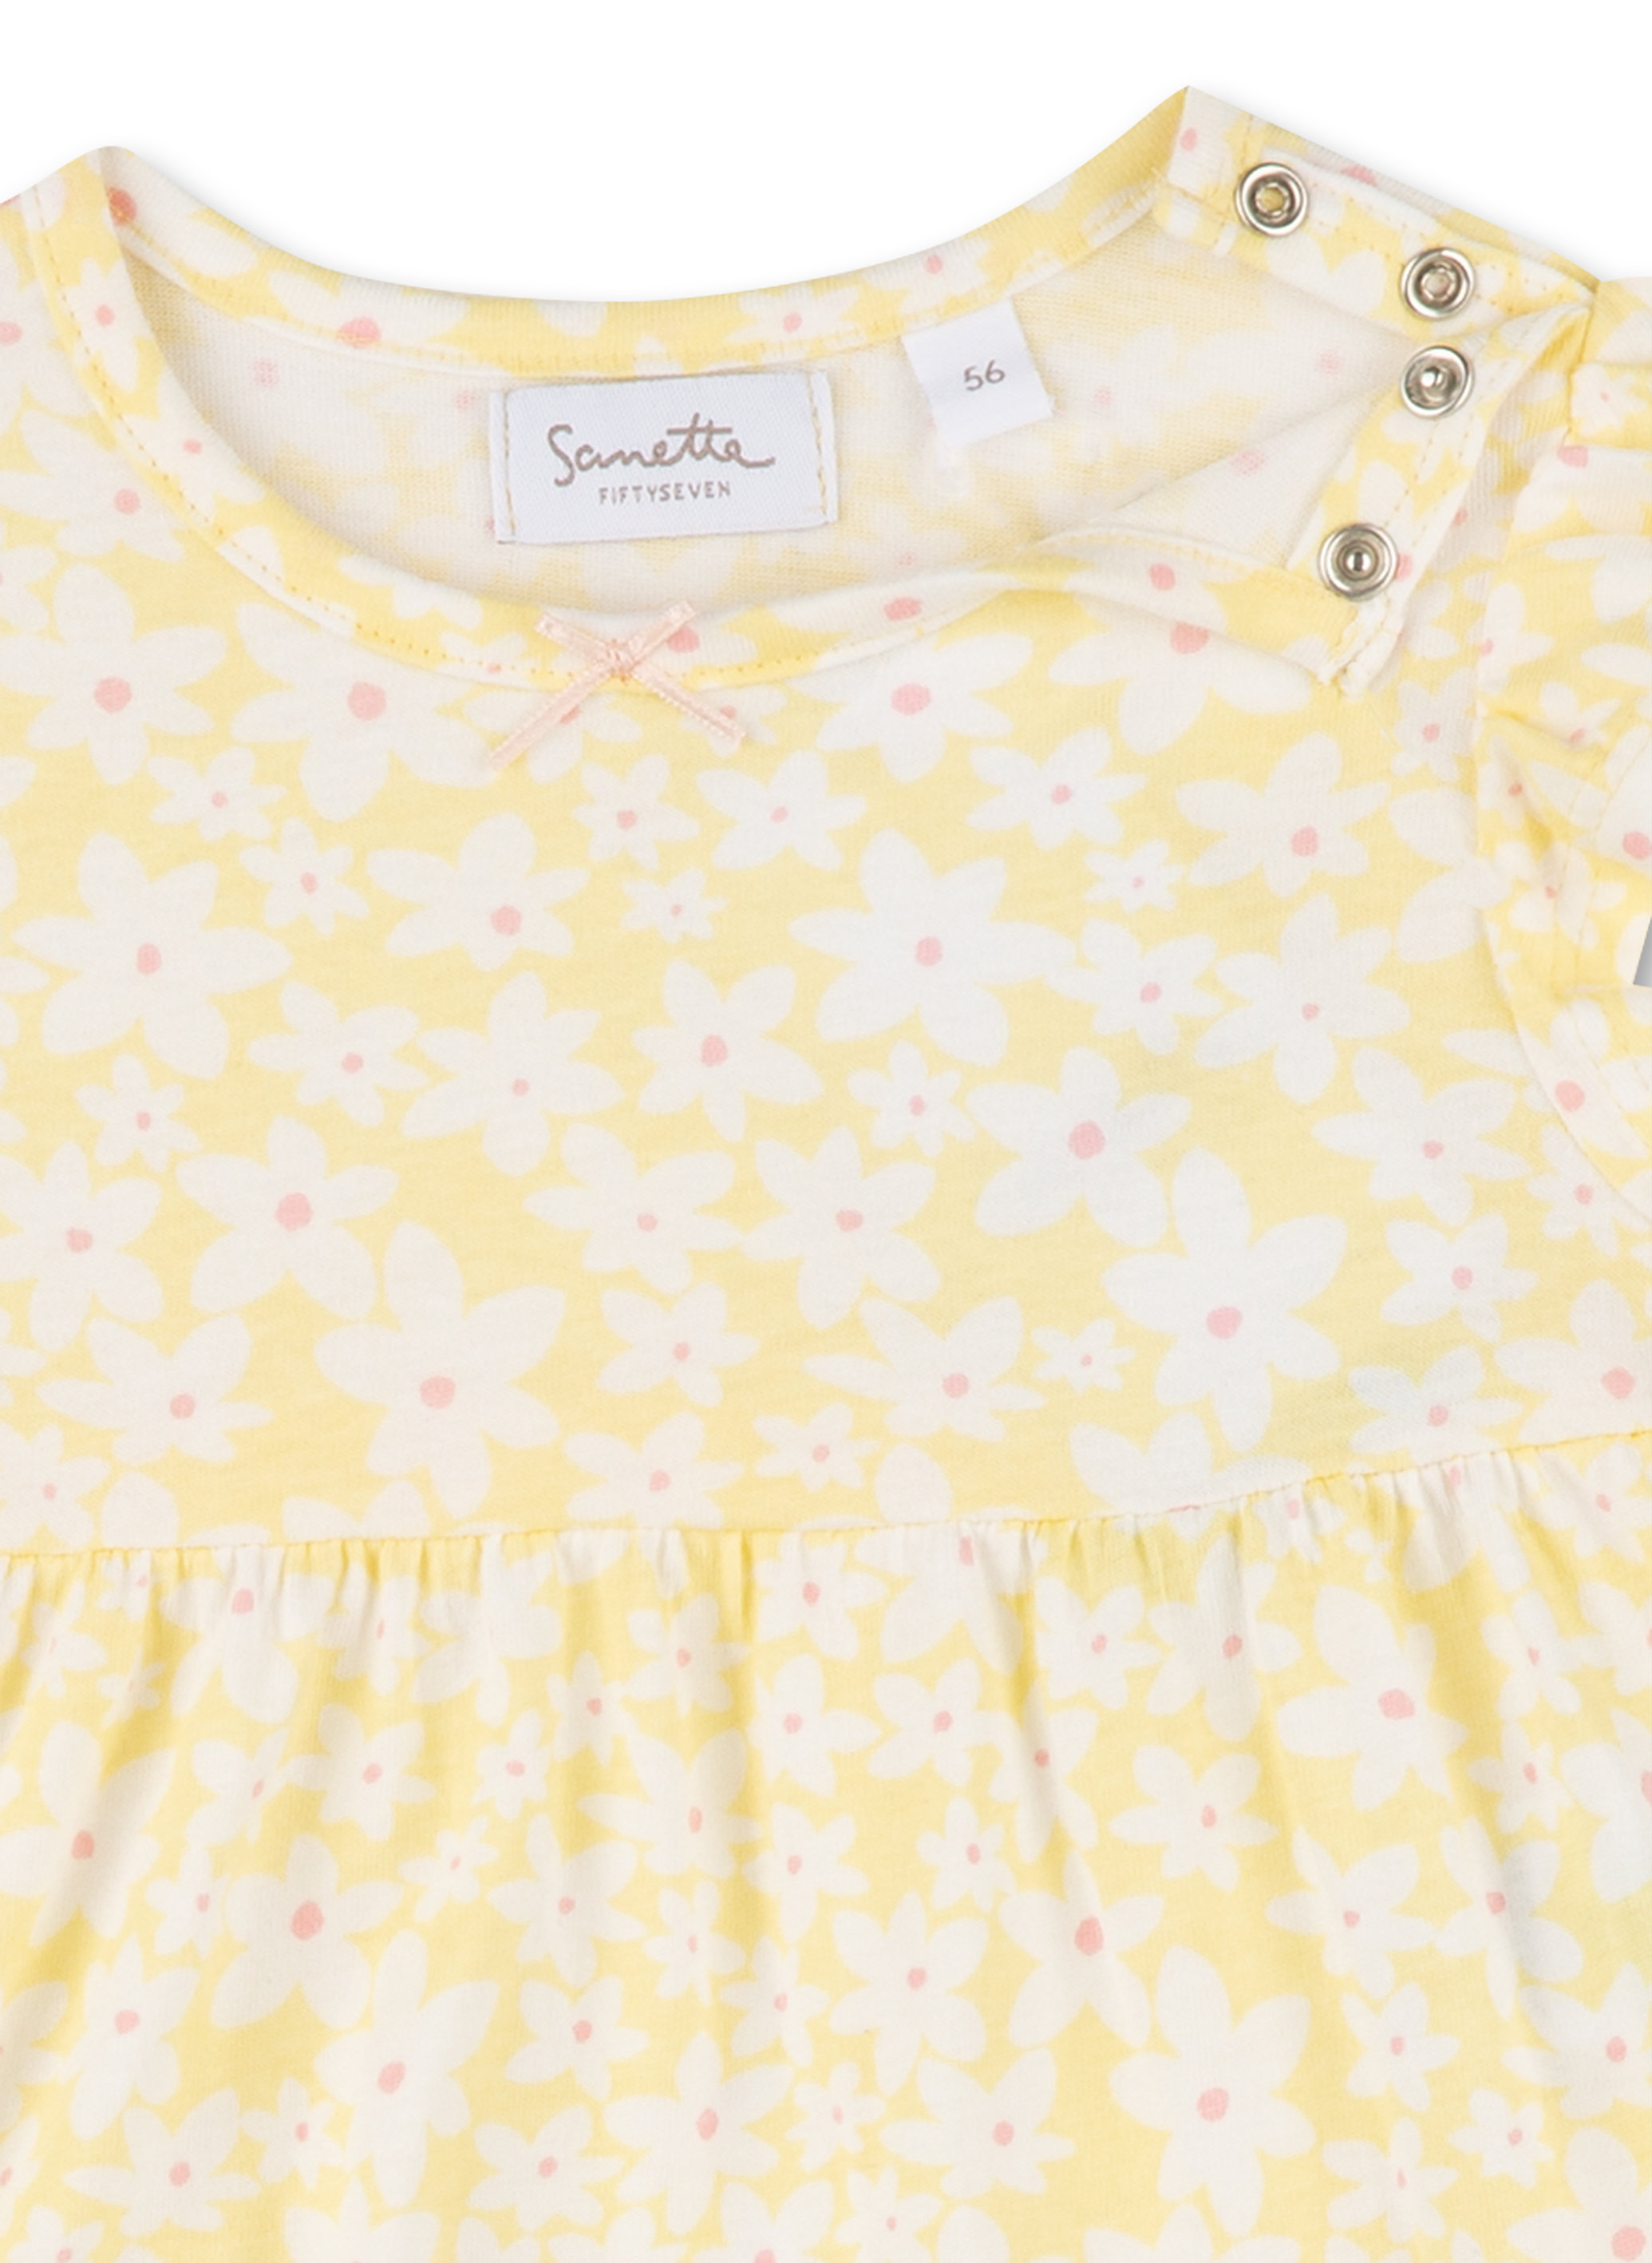 Mädchen-Kleid Gelb